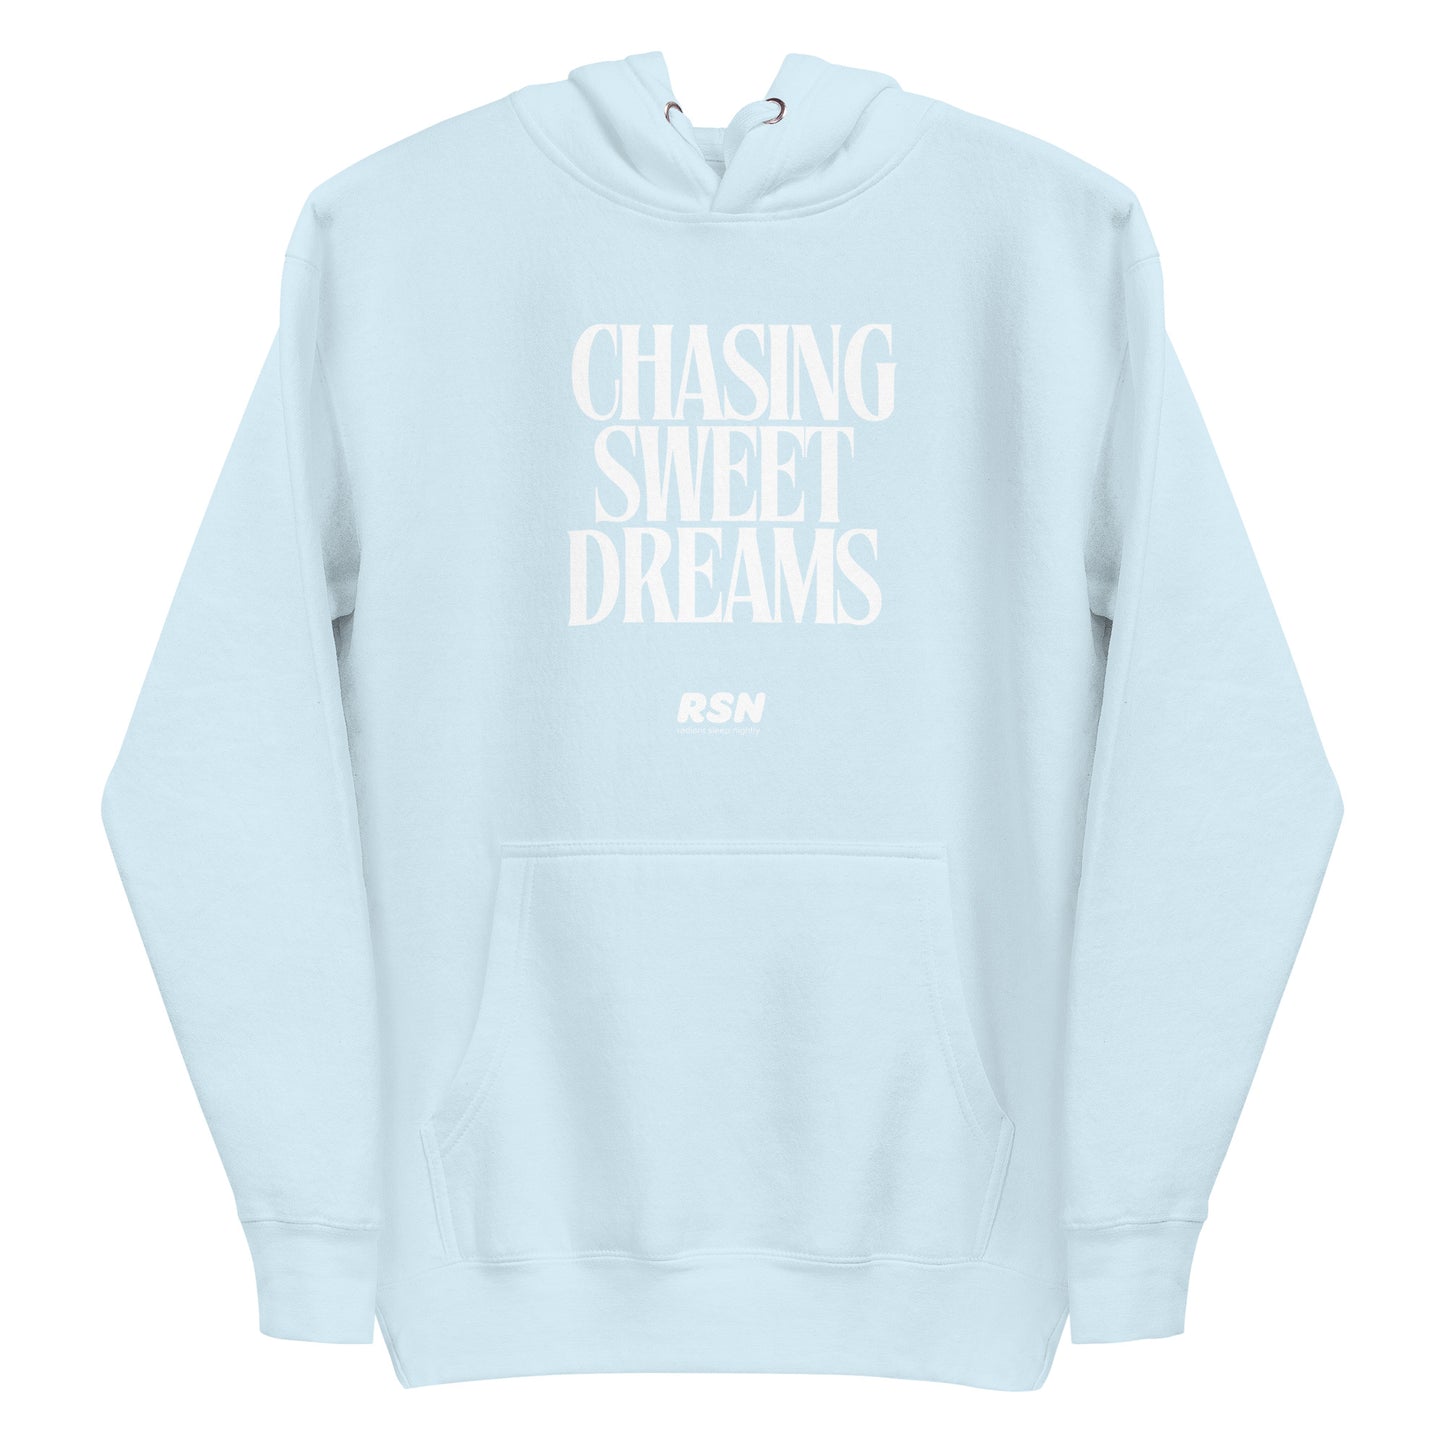 RSN - Chasing Sweet Dreams Hoodie